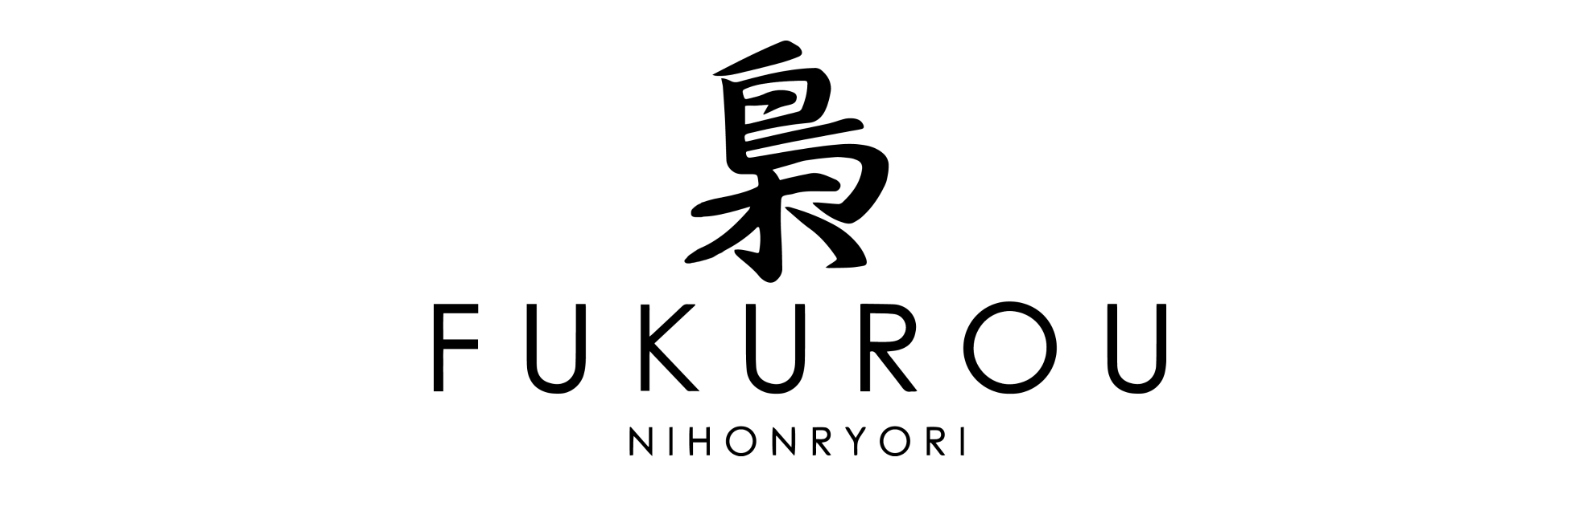 Fukurou Nihonryori